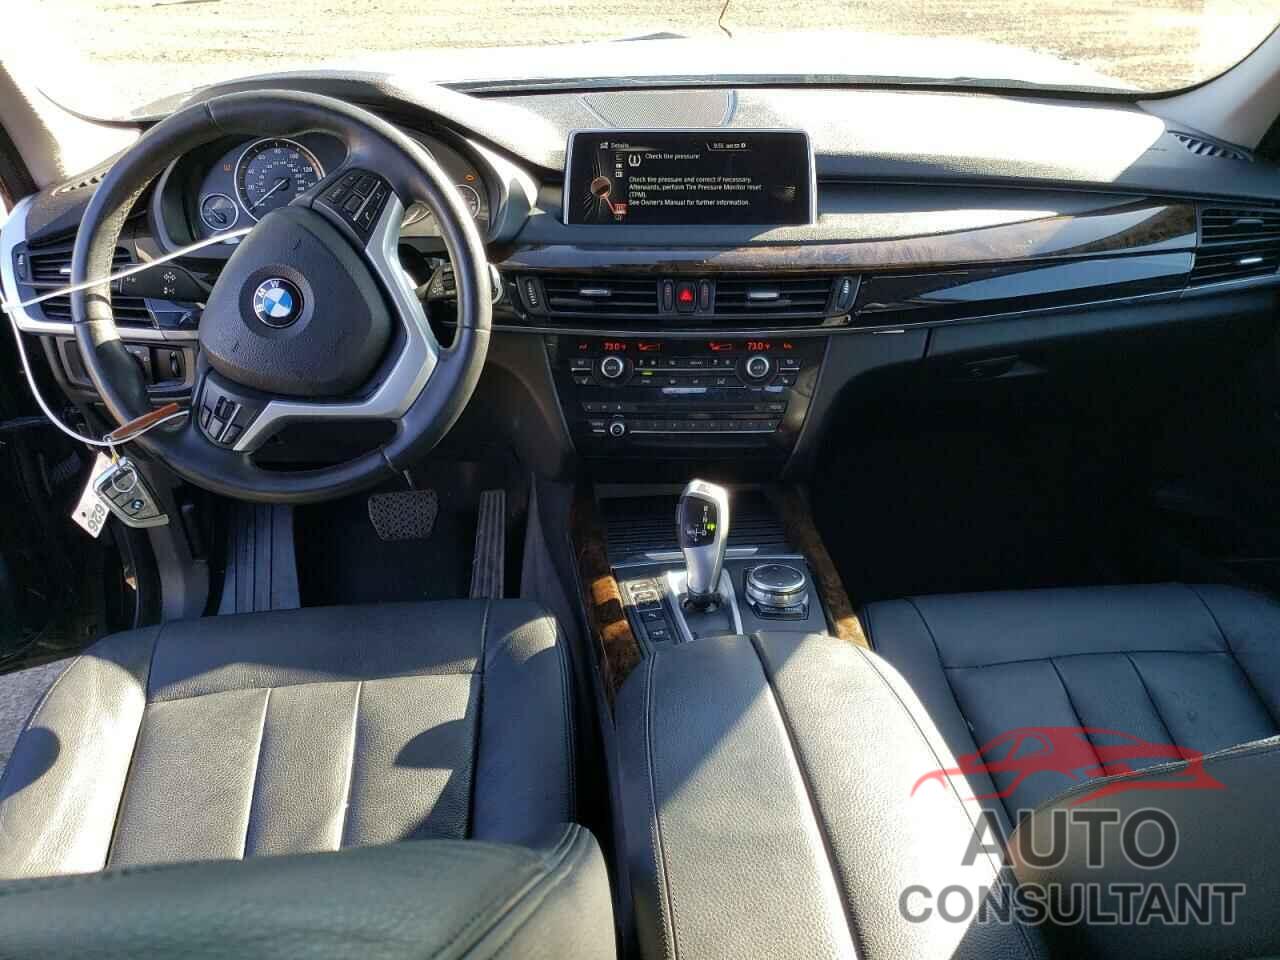 BMW X5 2015 - 5UXKR0C55F0P04904